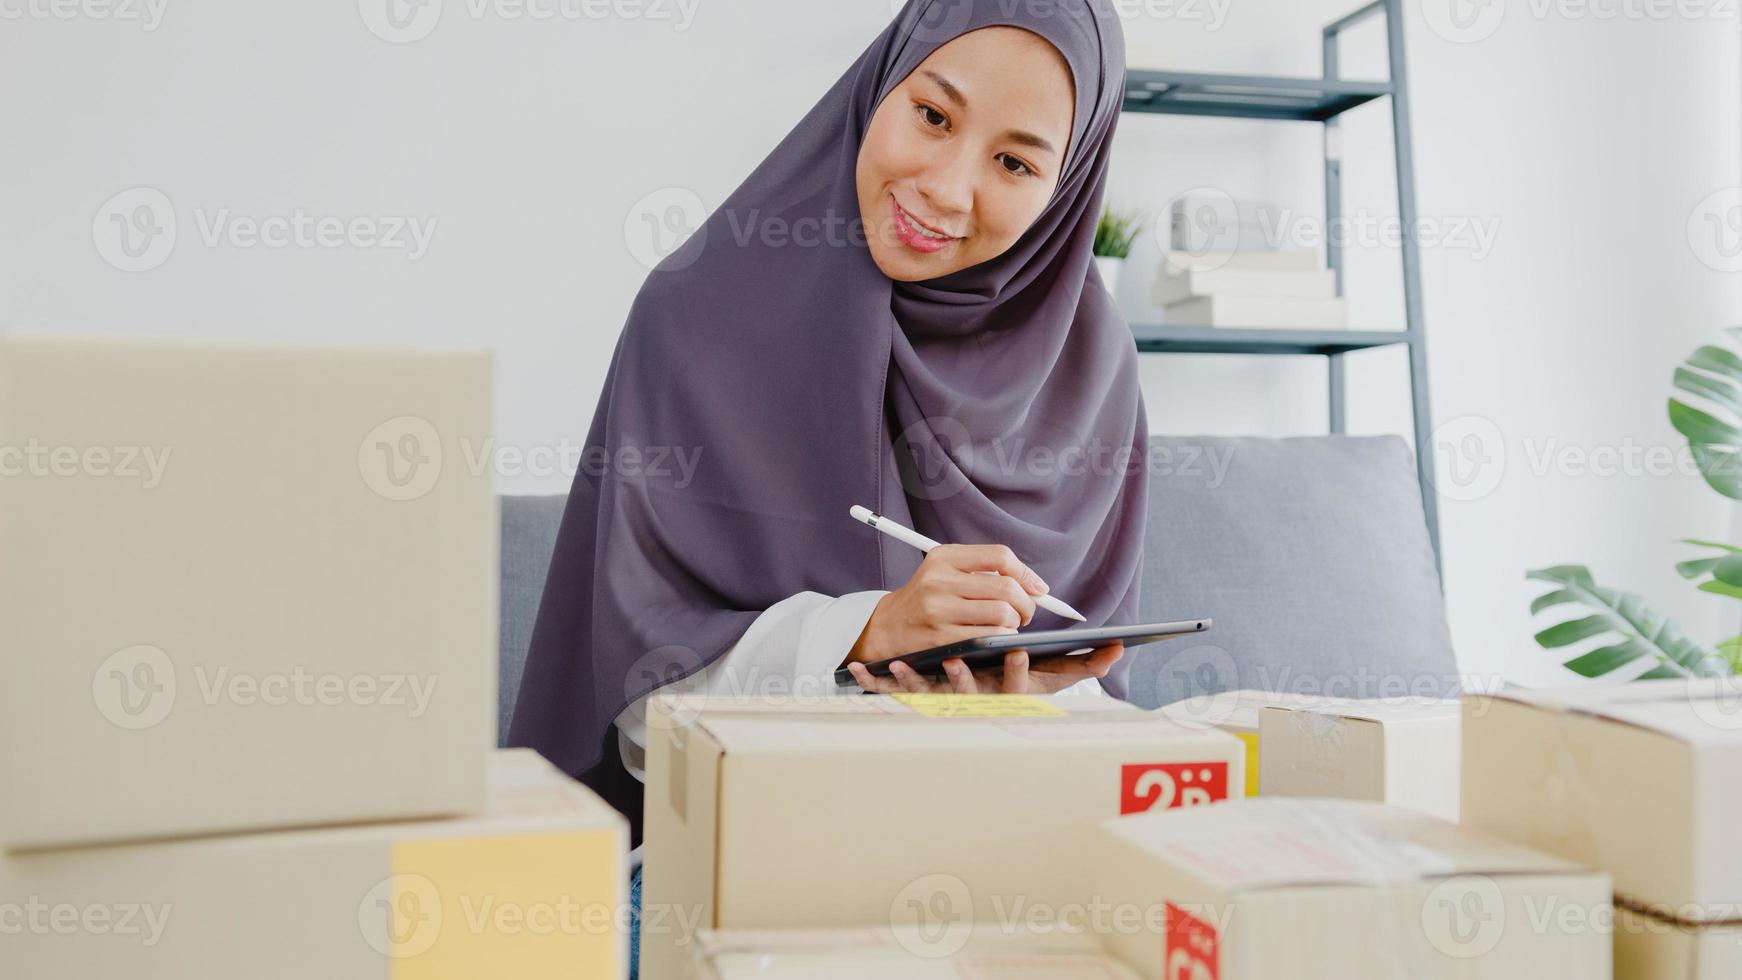 Junge asiatische muslimische Geschäftsfrau Produktbestellung auf Lager überprüfen und auf Tablet-Computerarbeit im Home-Office speichern. Kleinunternehmer, Online-Marktlieferung, Lifestyle-Freelance-Konzept. foto